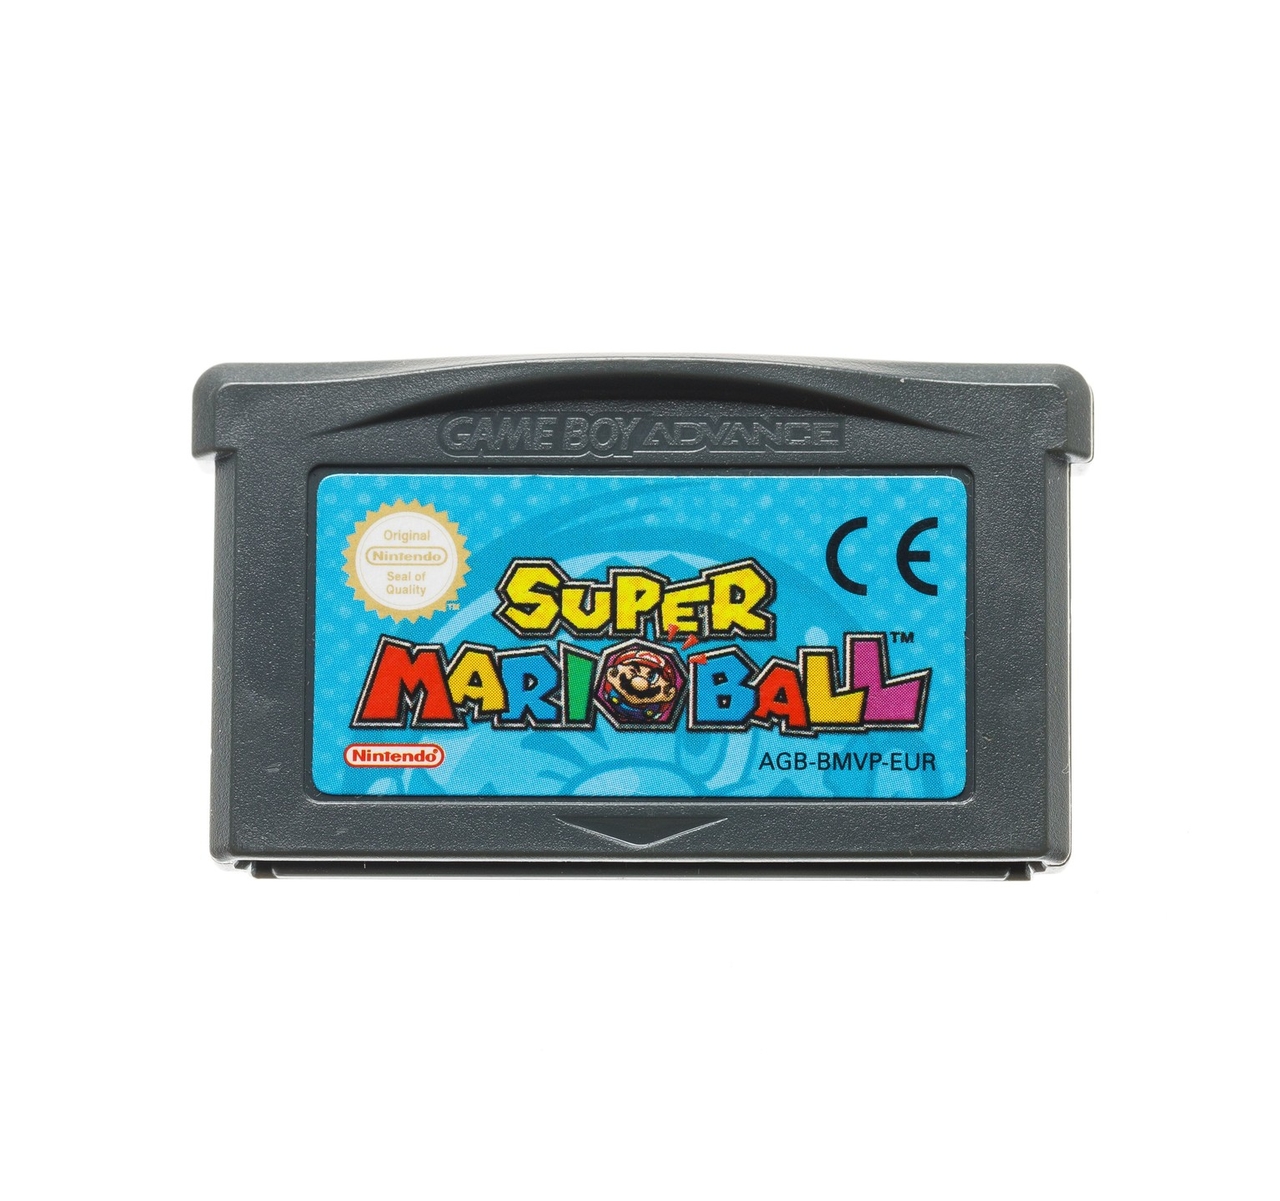 Super Mario Ball Kopen | Gameboy Advance Games